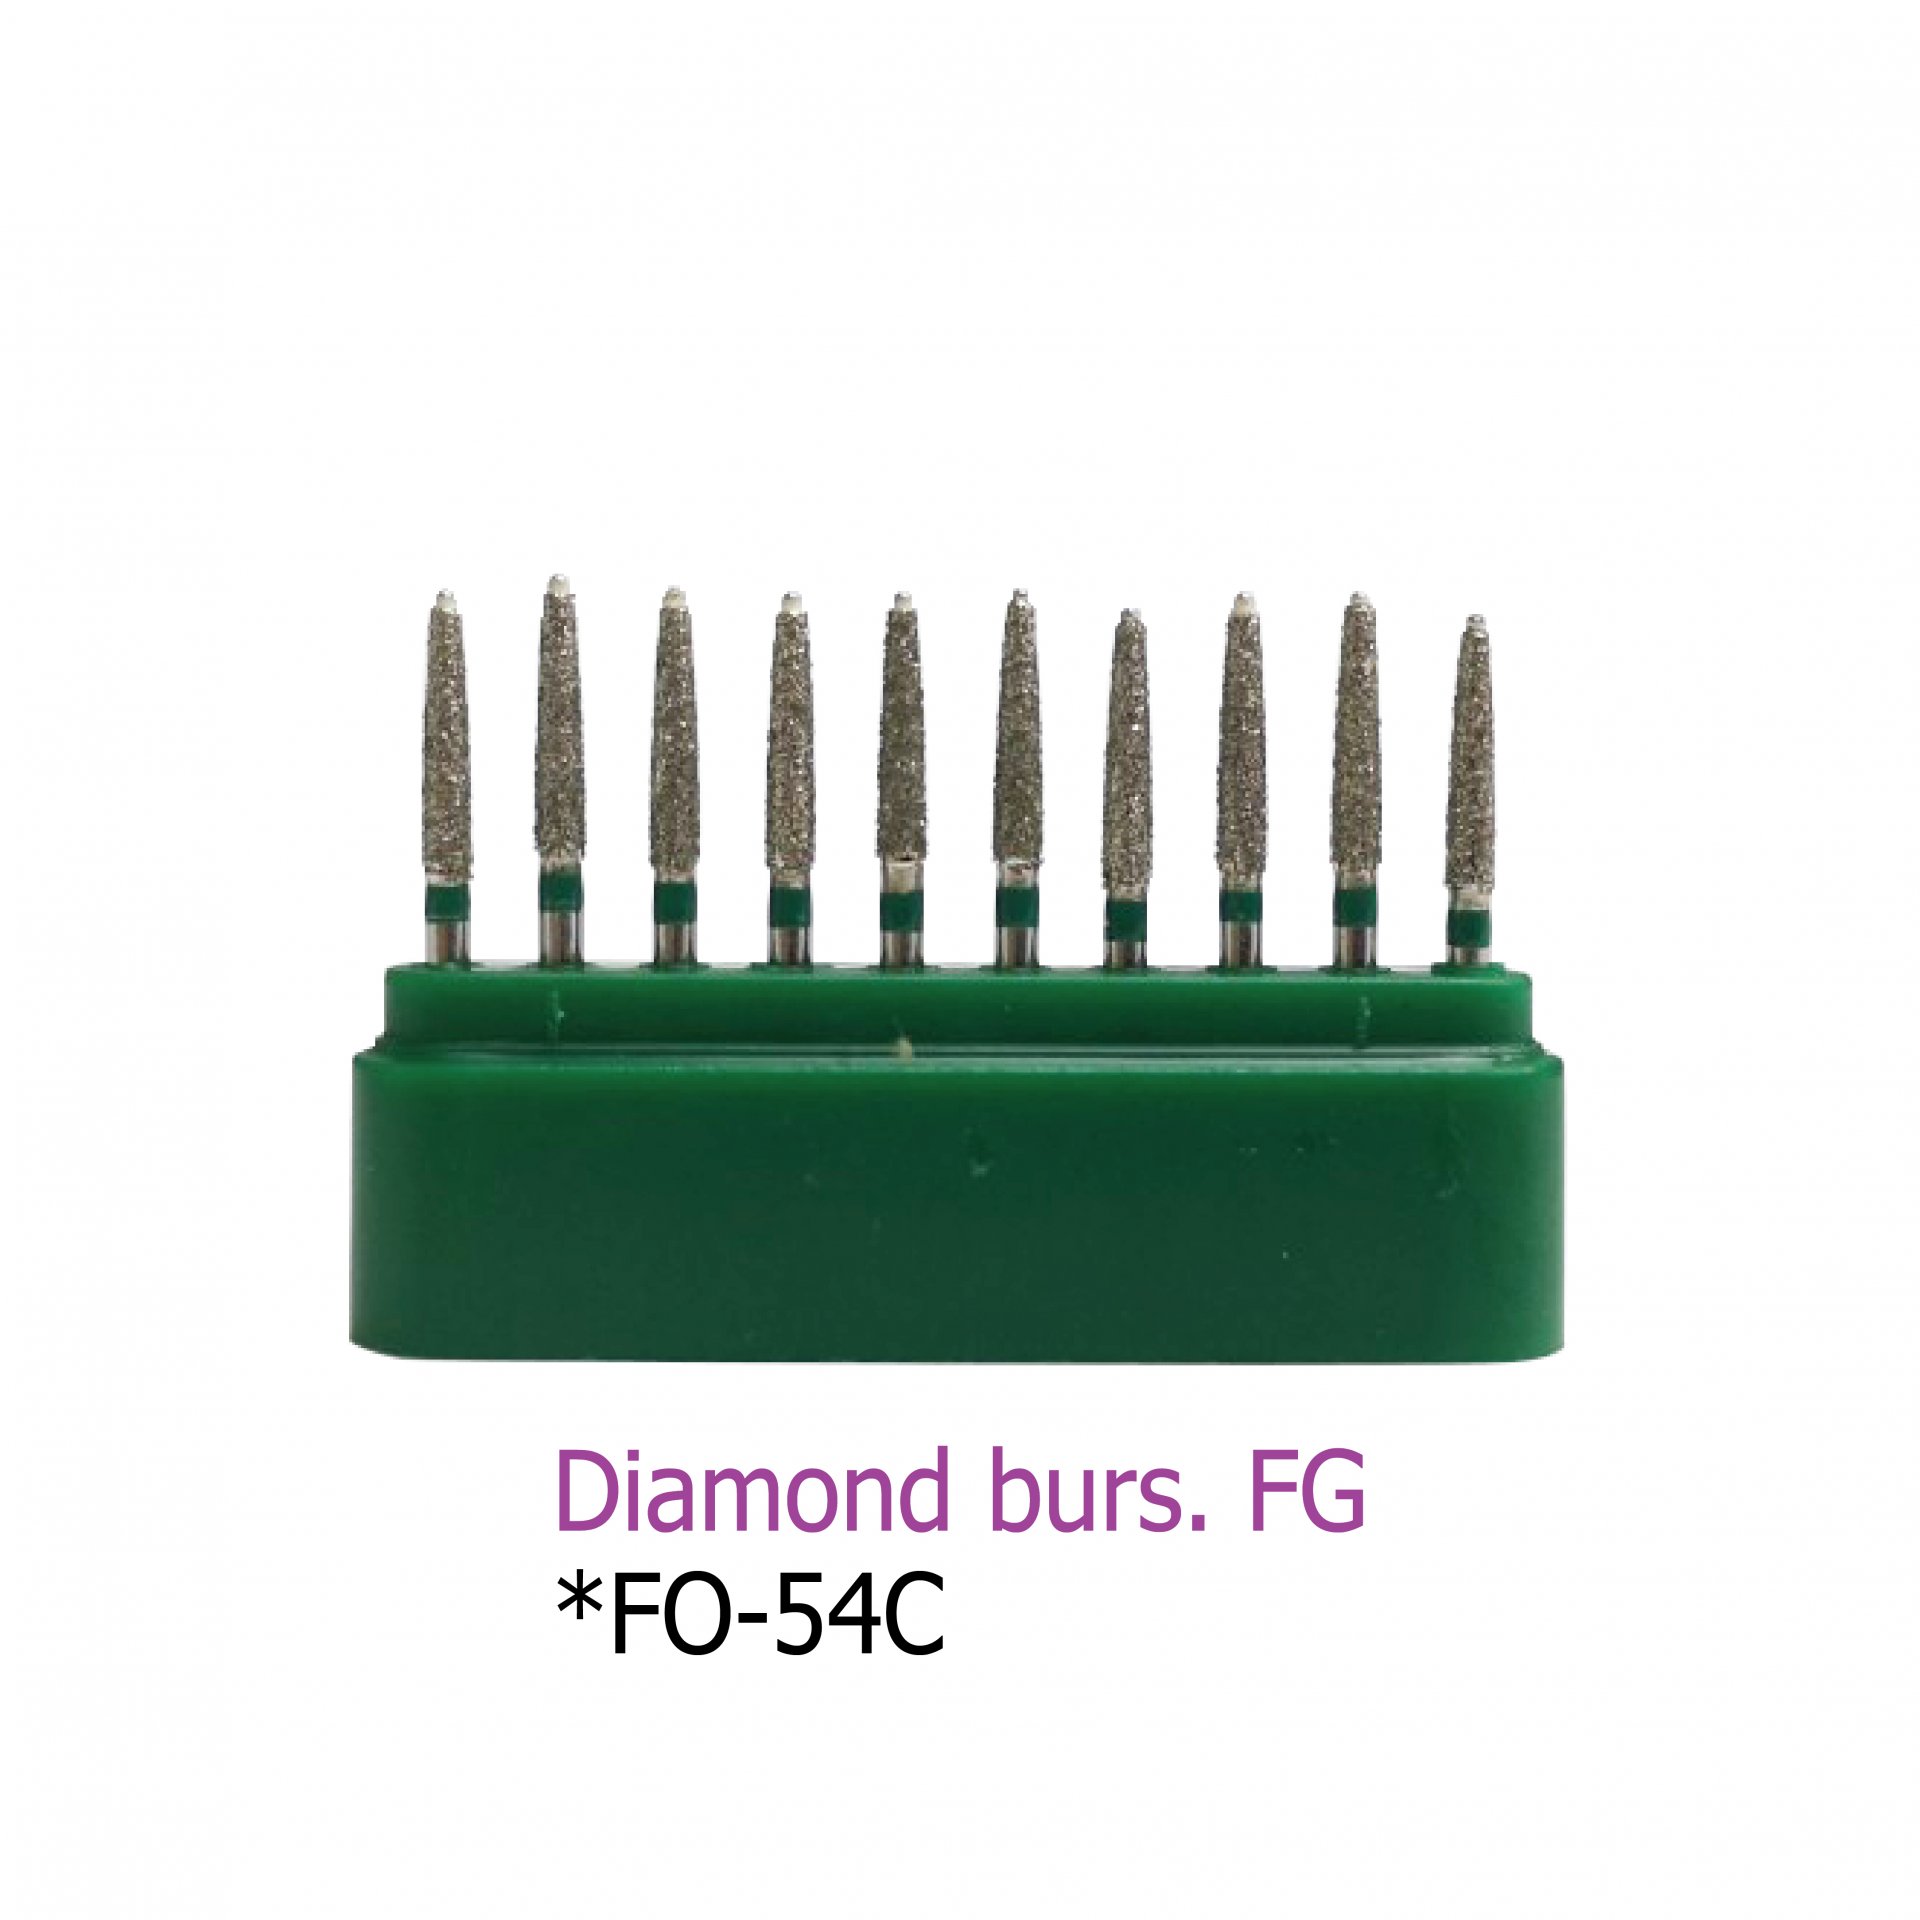 Diamond burs. FG *FO-54C